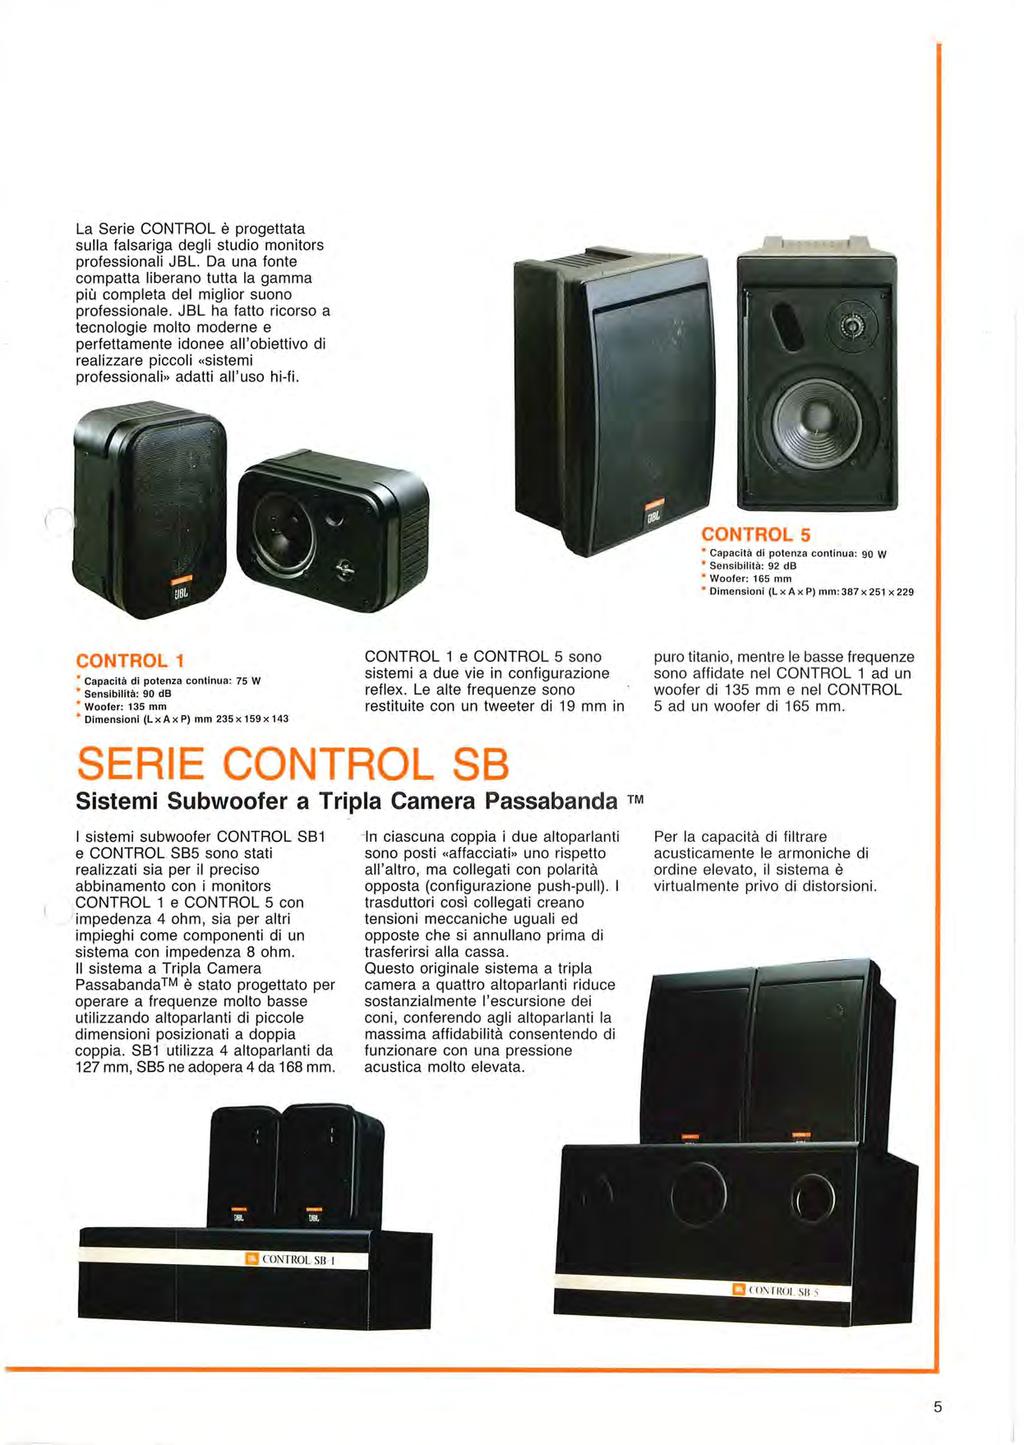 La Serie CONTROL è progettata sulla falsariga degli studio monitors professionali JBL. Da una fonte compatta liberano tutta la gamma più completa del miglior suono professionale.